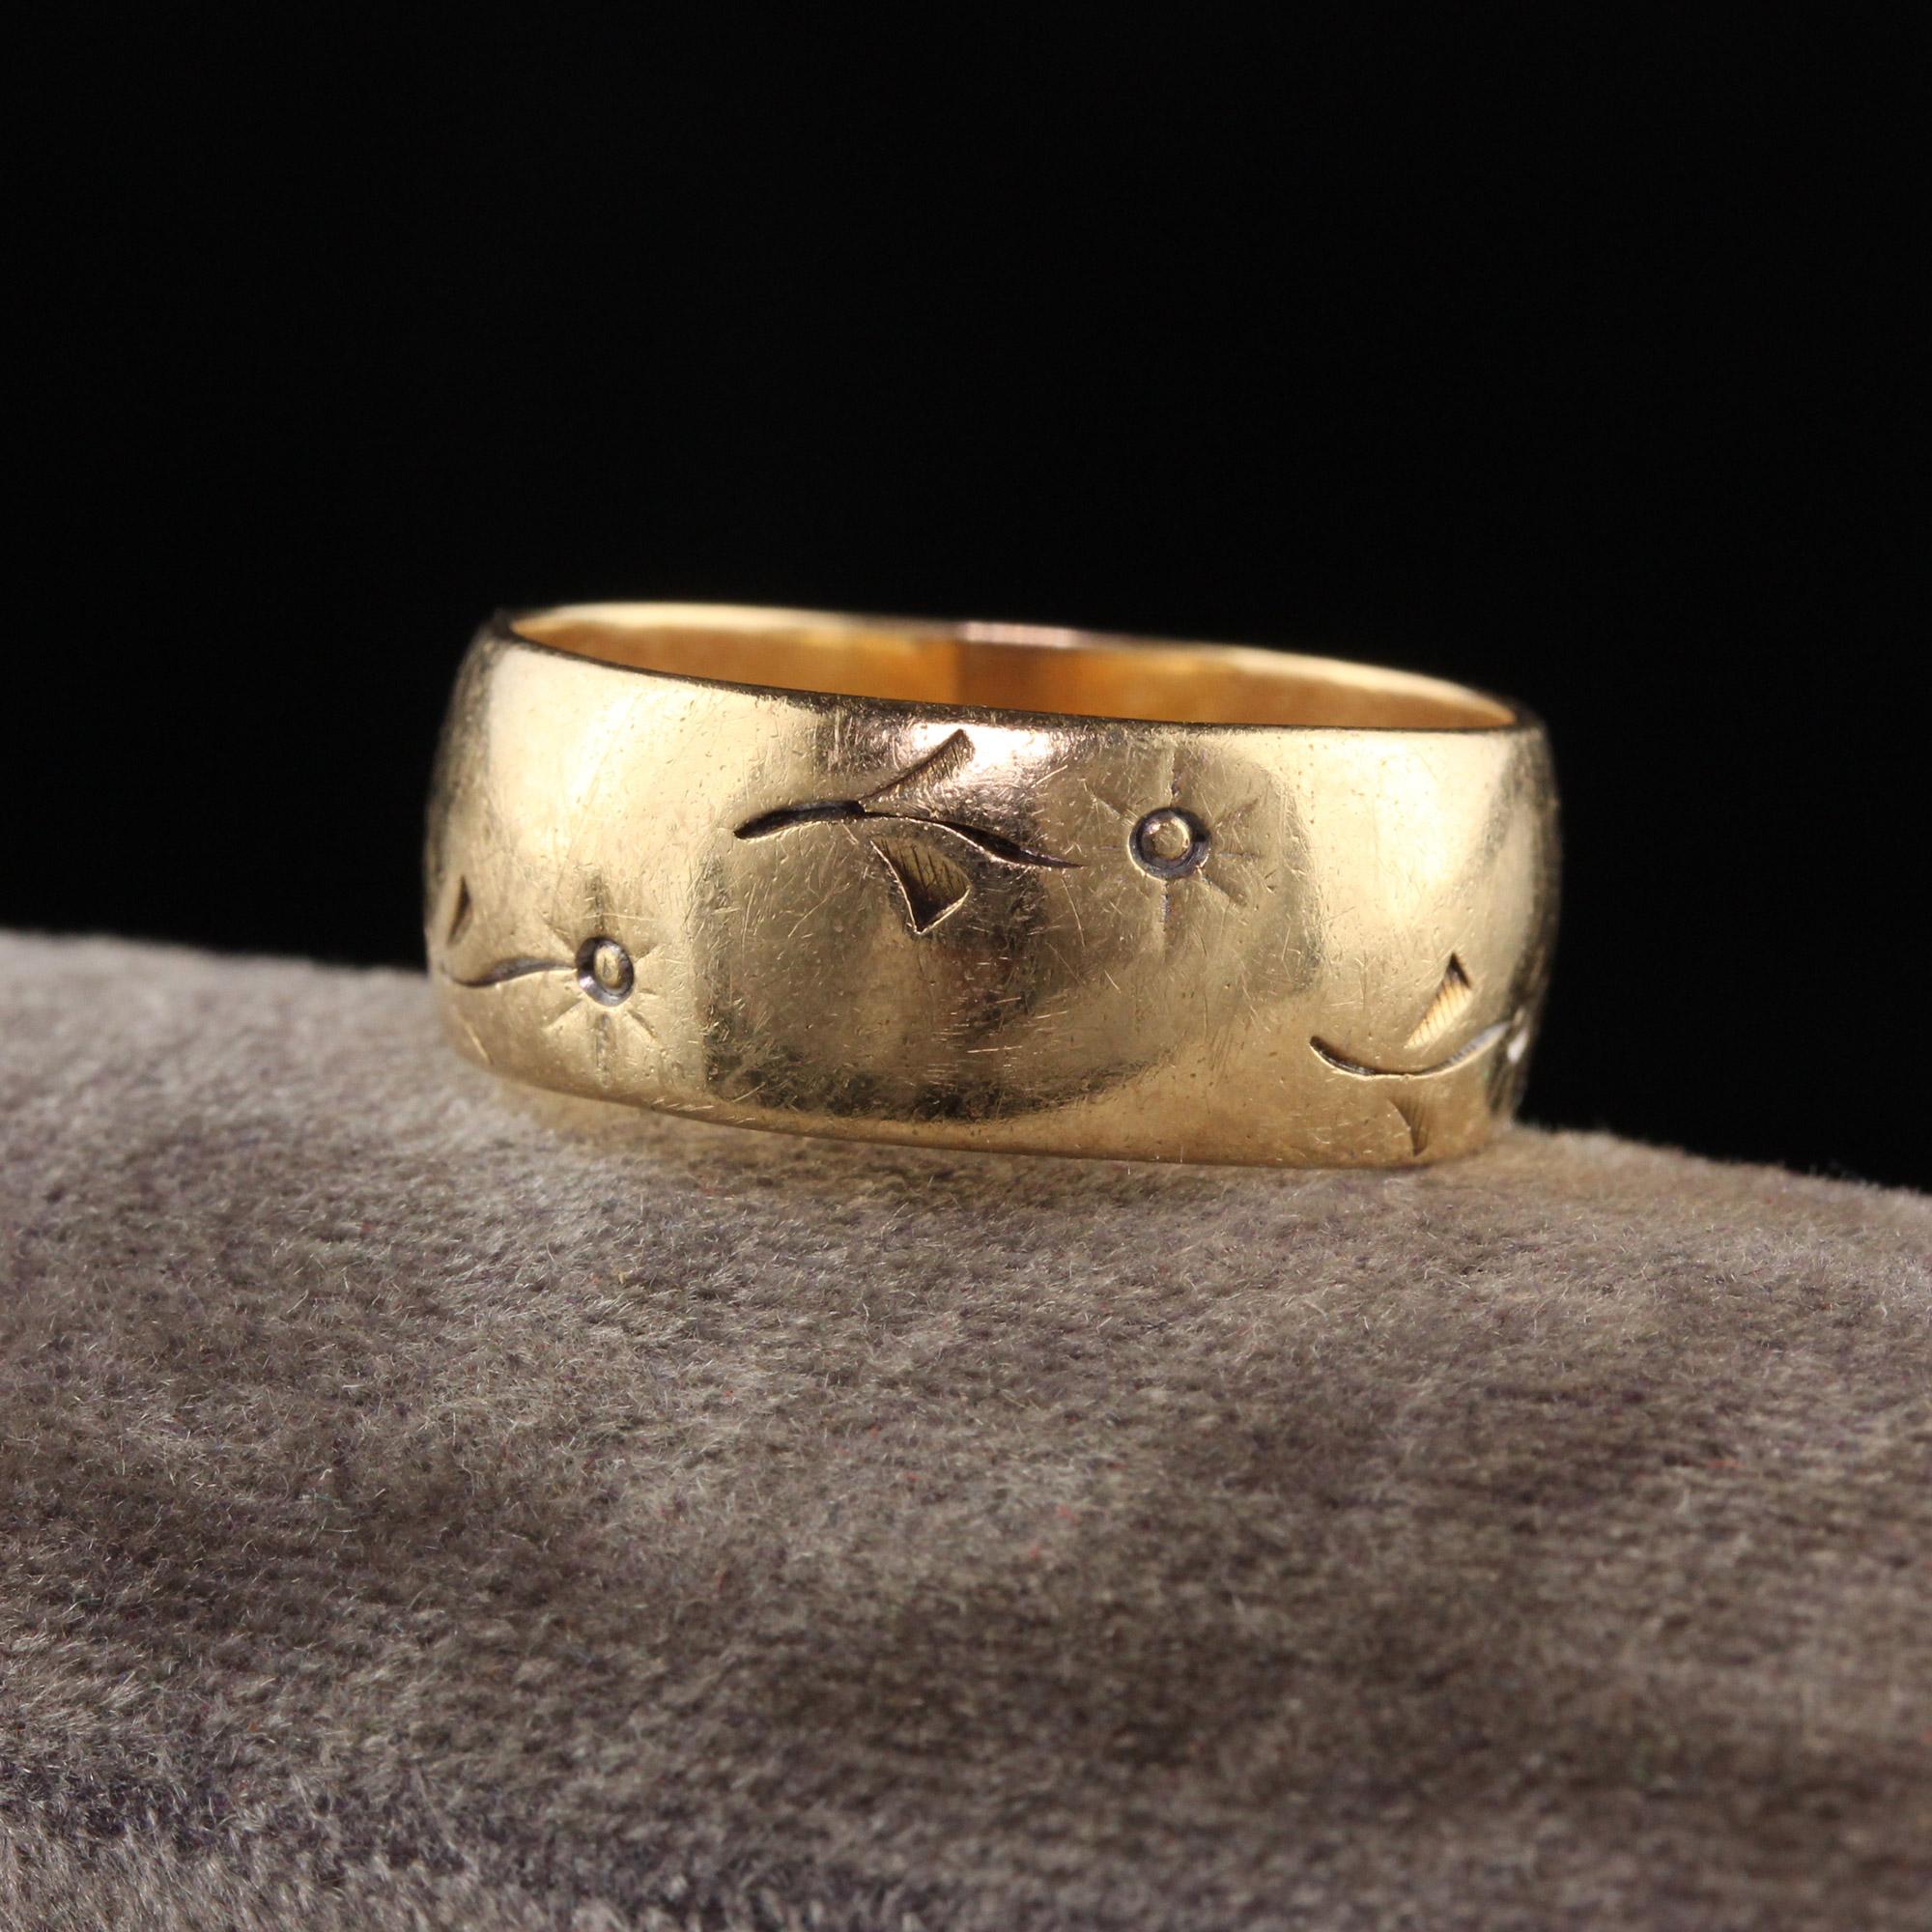 Magnifique alliance ancienne Art Déco en or jaune 14 carats, gravée d'une fleur. Ce magnifique bracelet est fabriqué en or jaune 14k. Il y a des gravures de fleurs tout autour de la bague et elle est en bon état.

Article #R1391

Métal : Or jaune